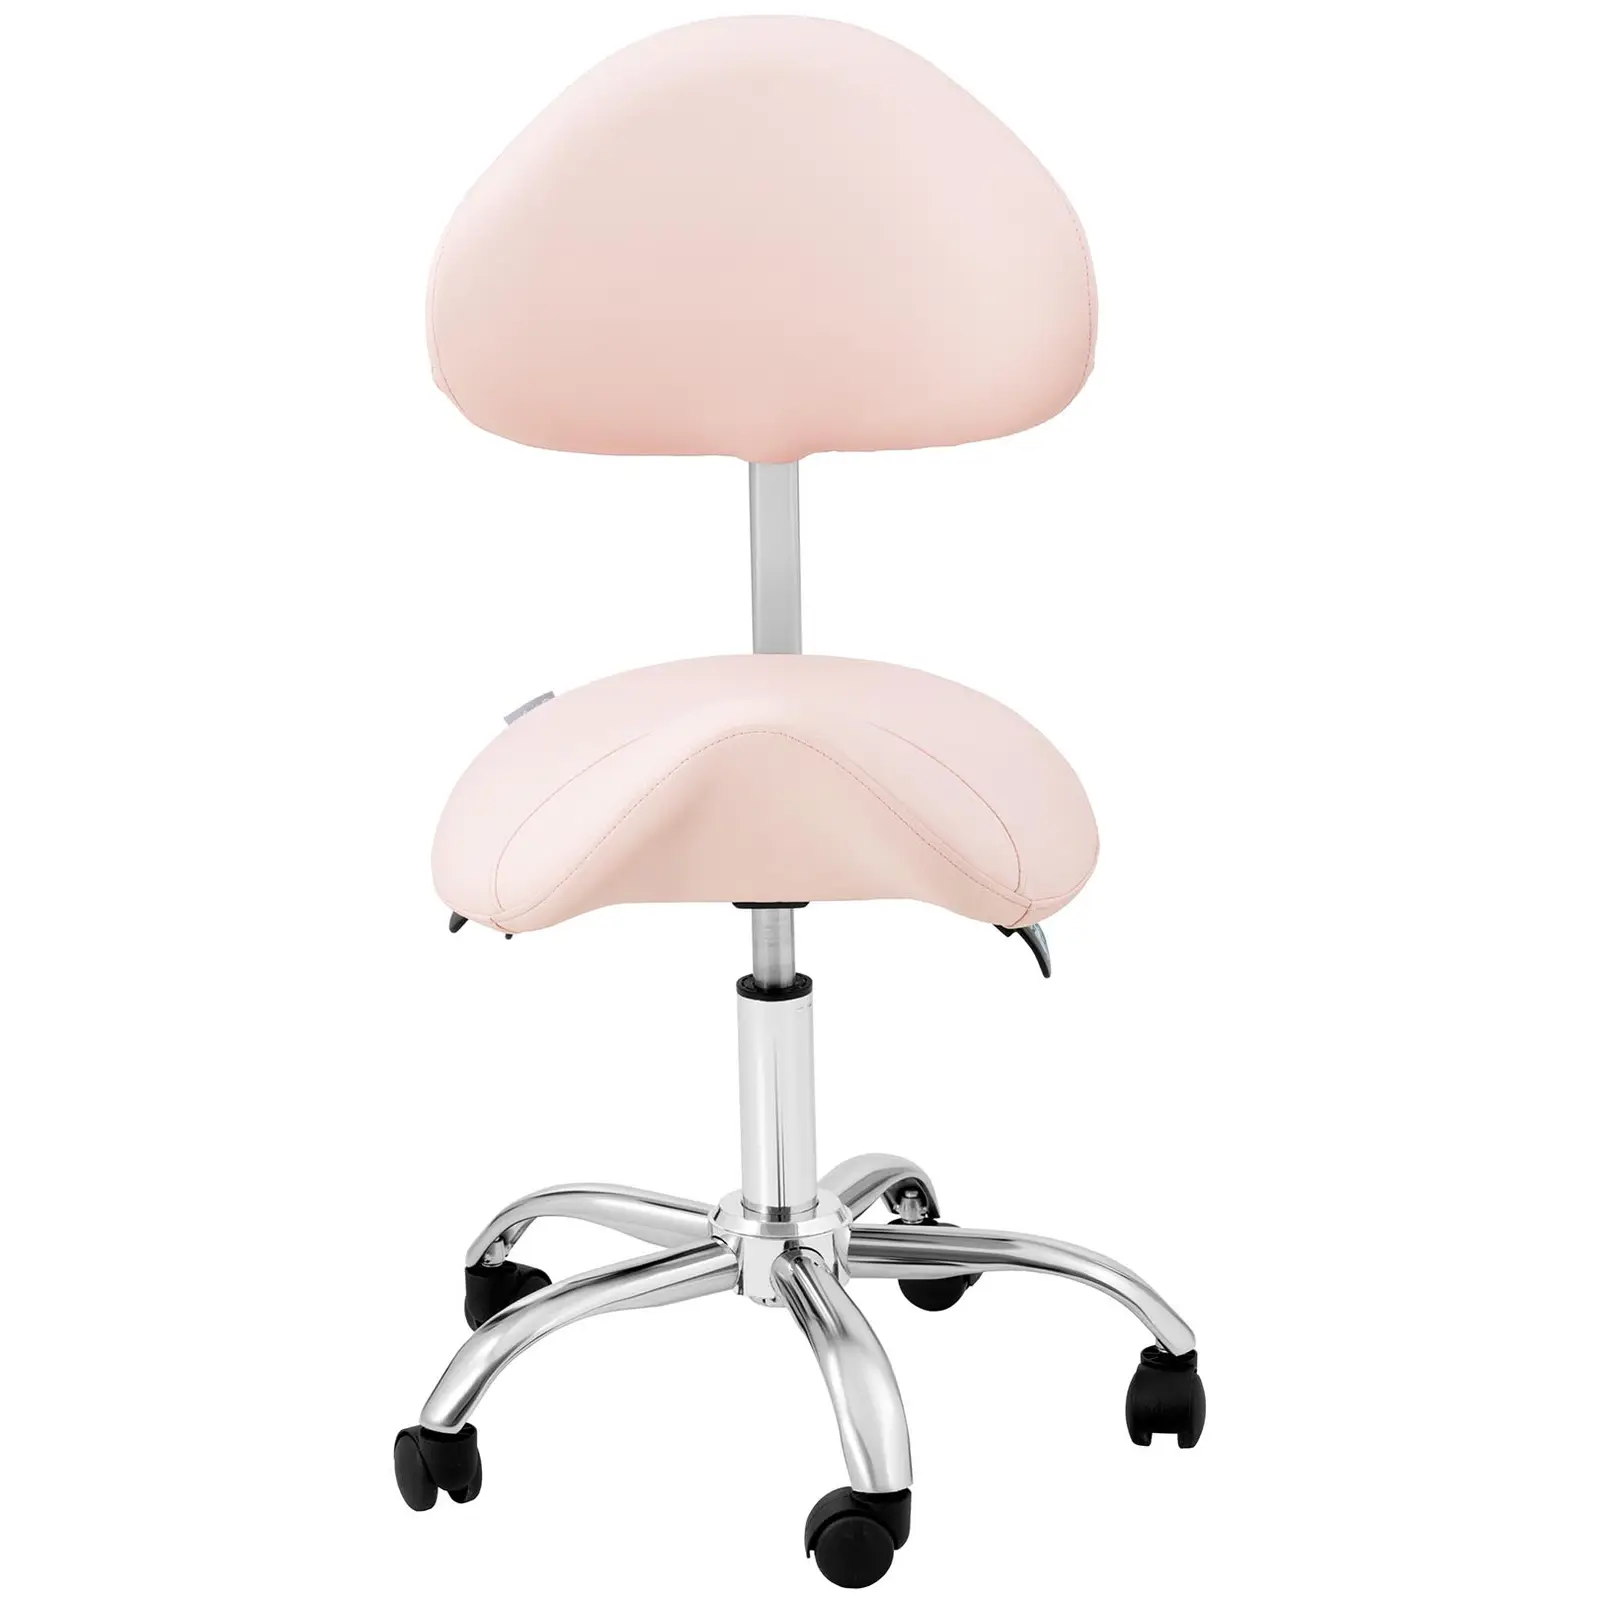 Sedlová židle - 55–69 cm - 150 kg - Růžová, Stříbrná